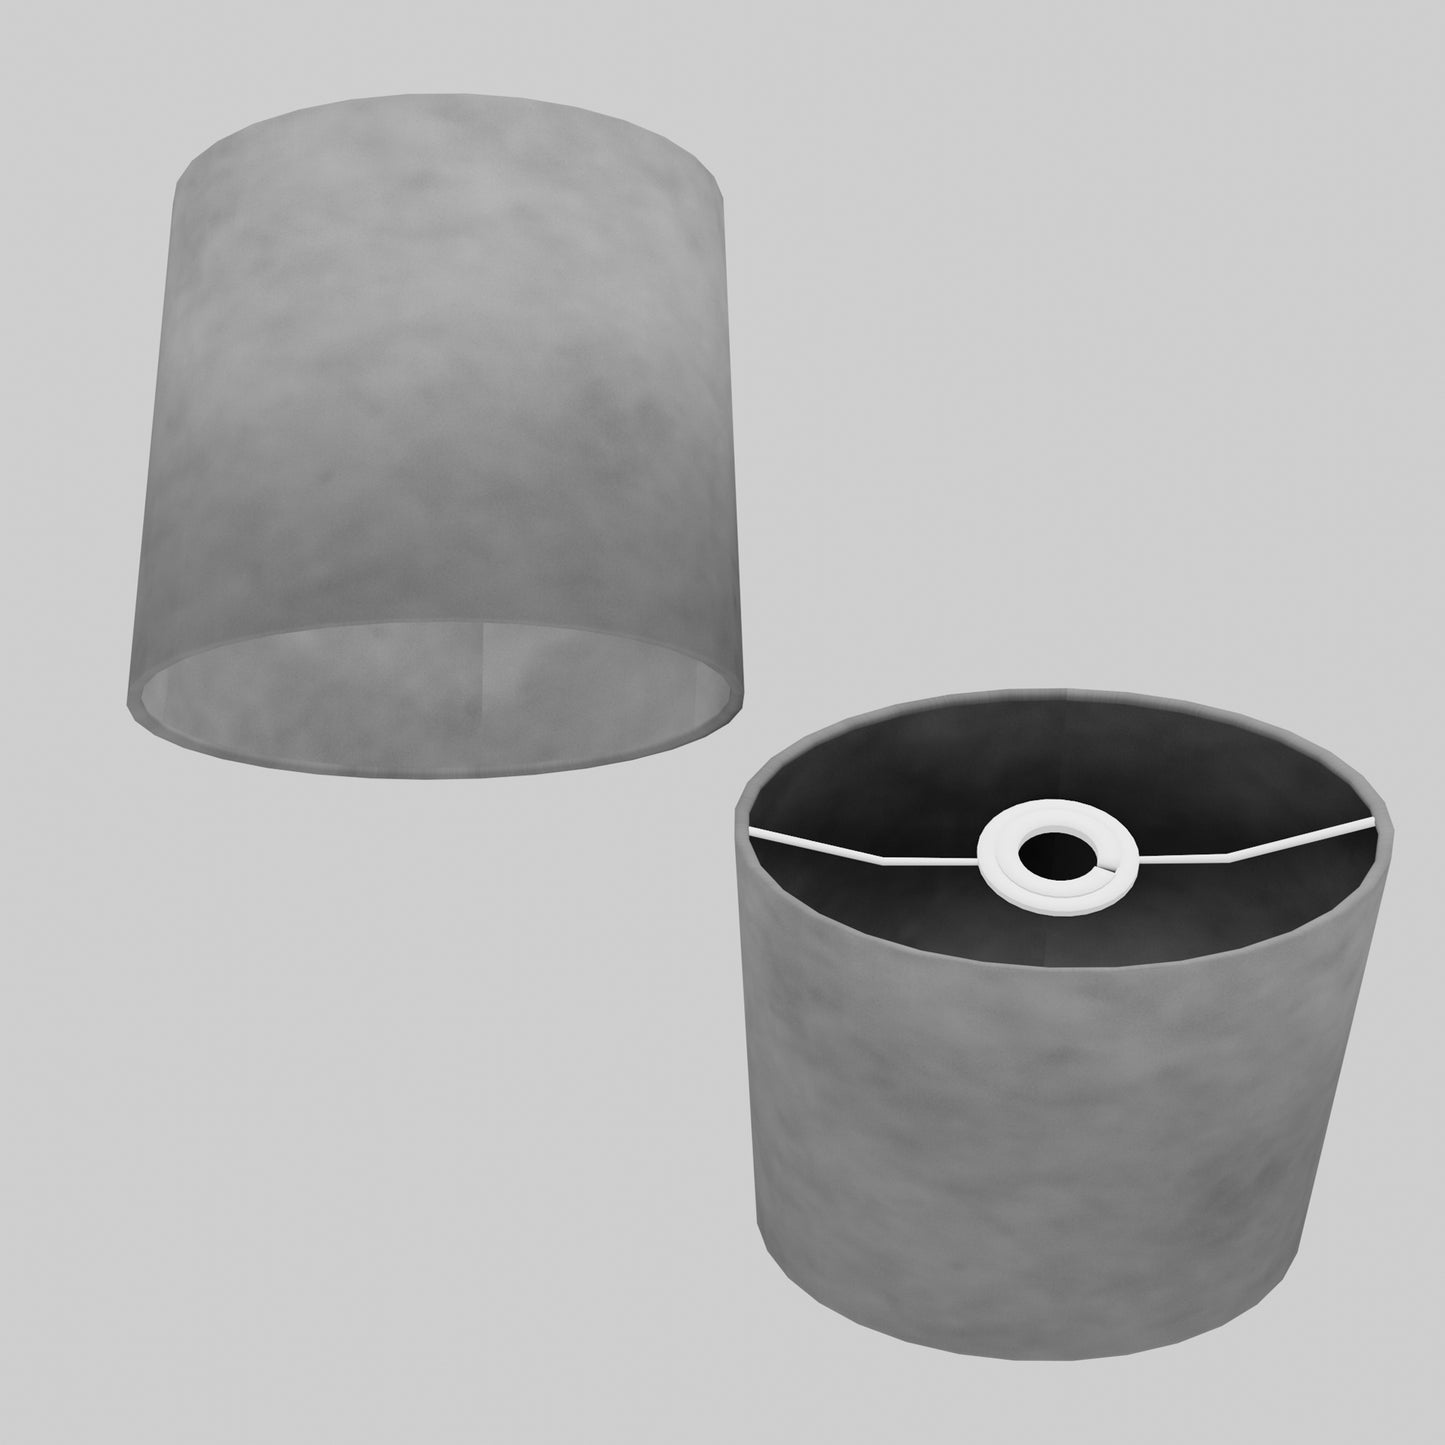 Oval Lamp Shade - P53 - Pewter Grey, 20cm(w) x 20cm(h) x 13cm(d)